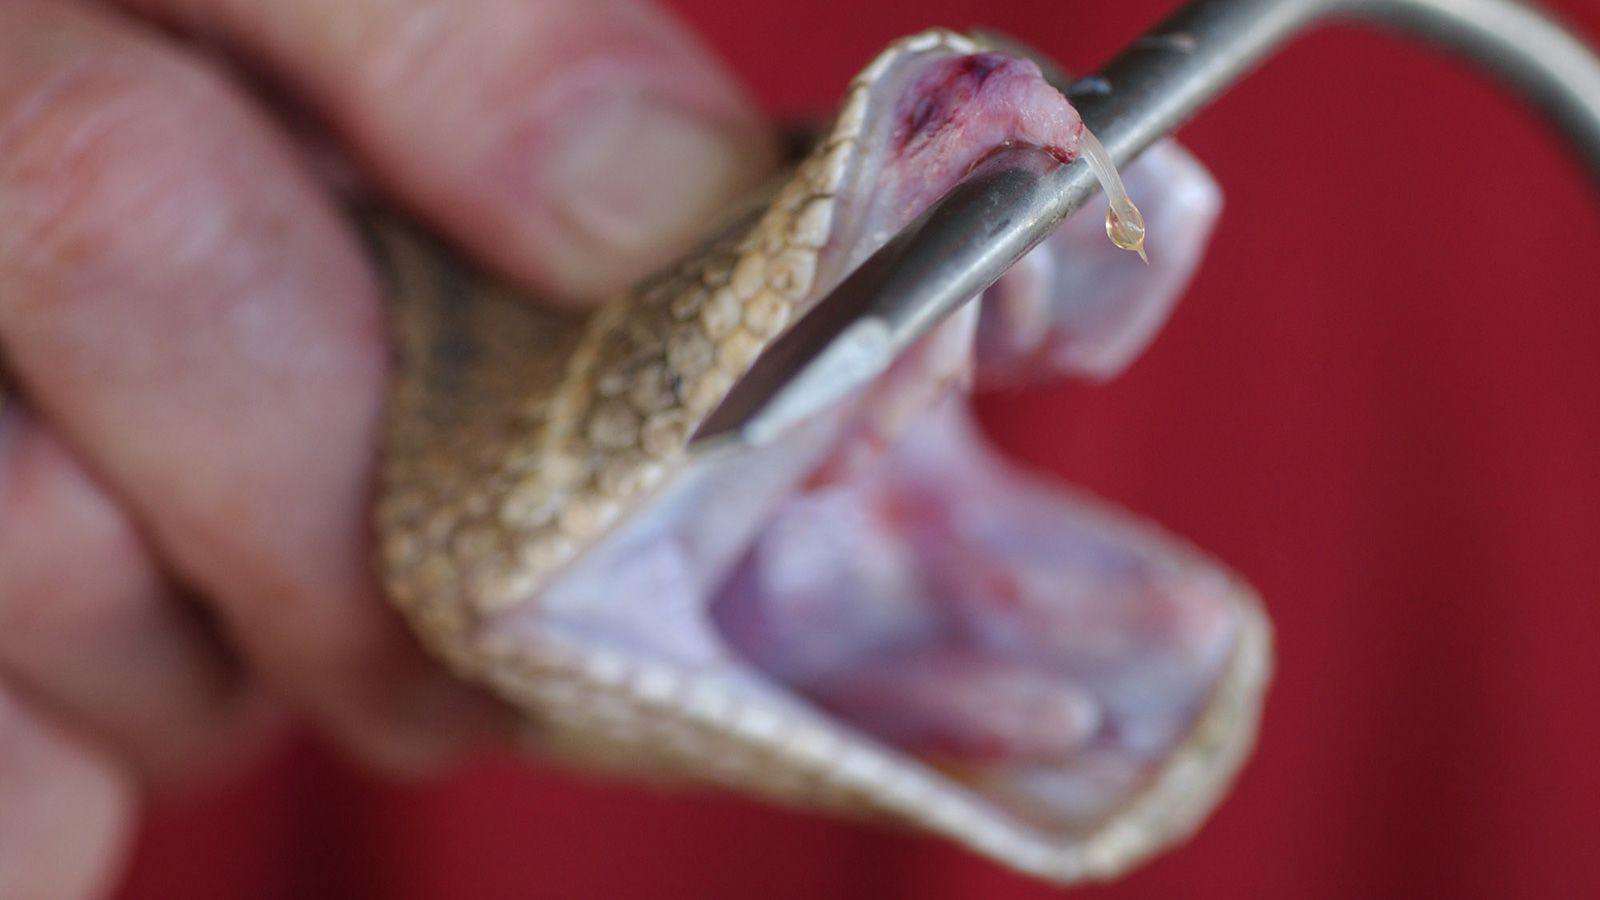 What to Do for Rattlesnake Bite?